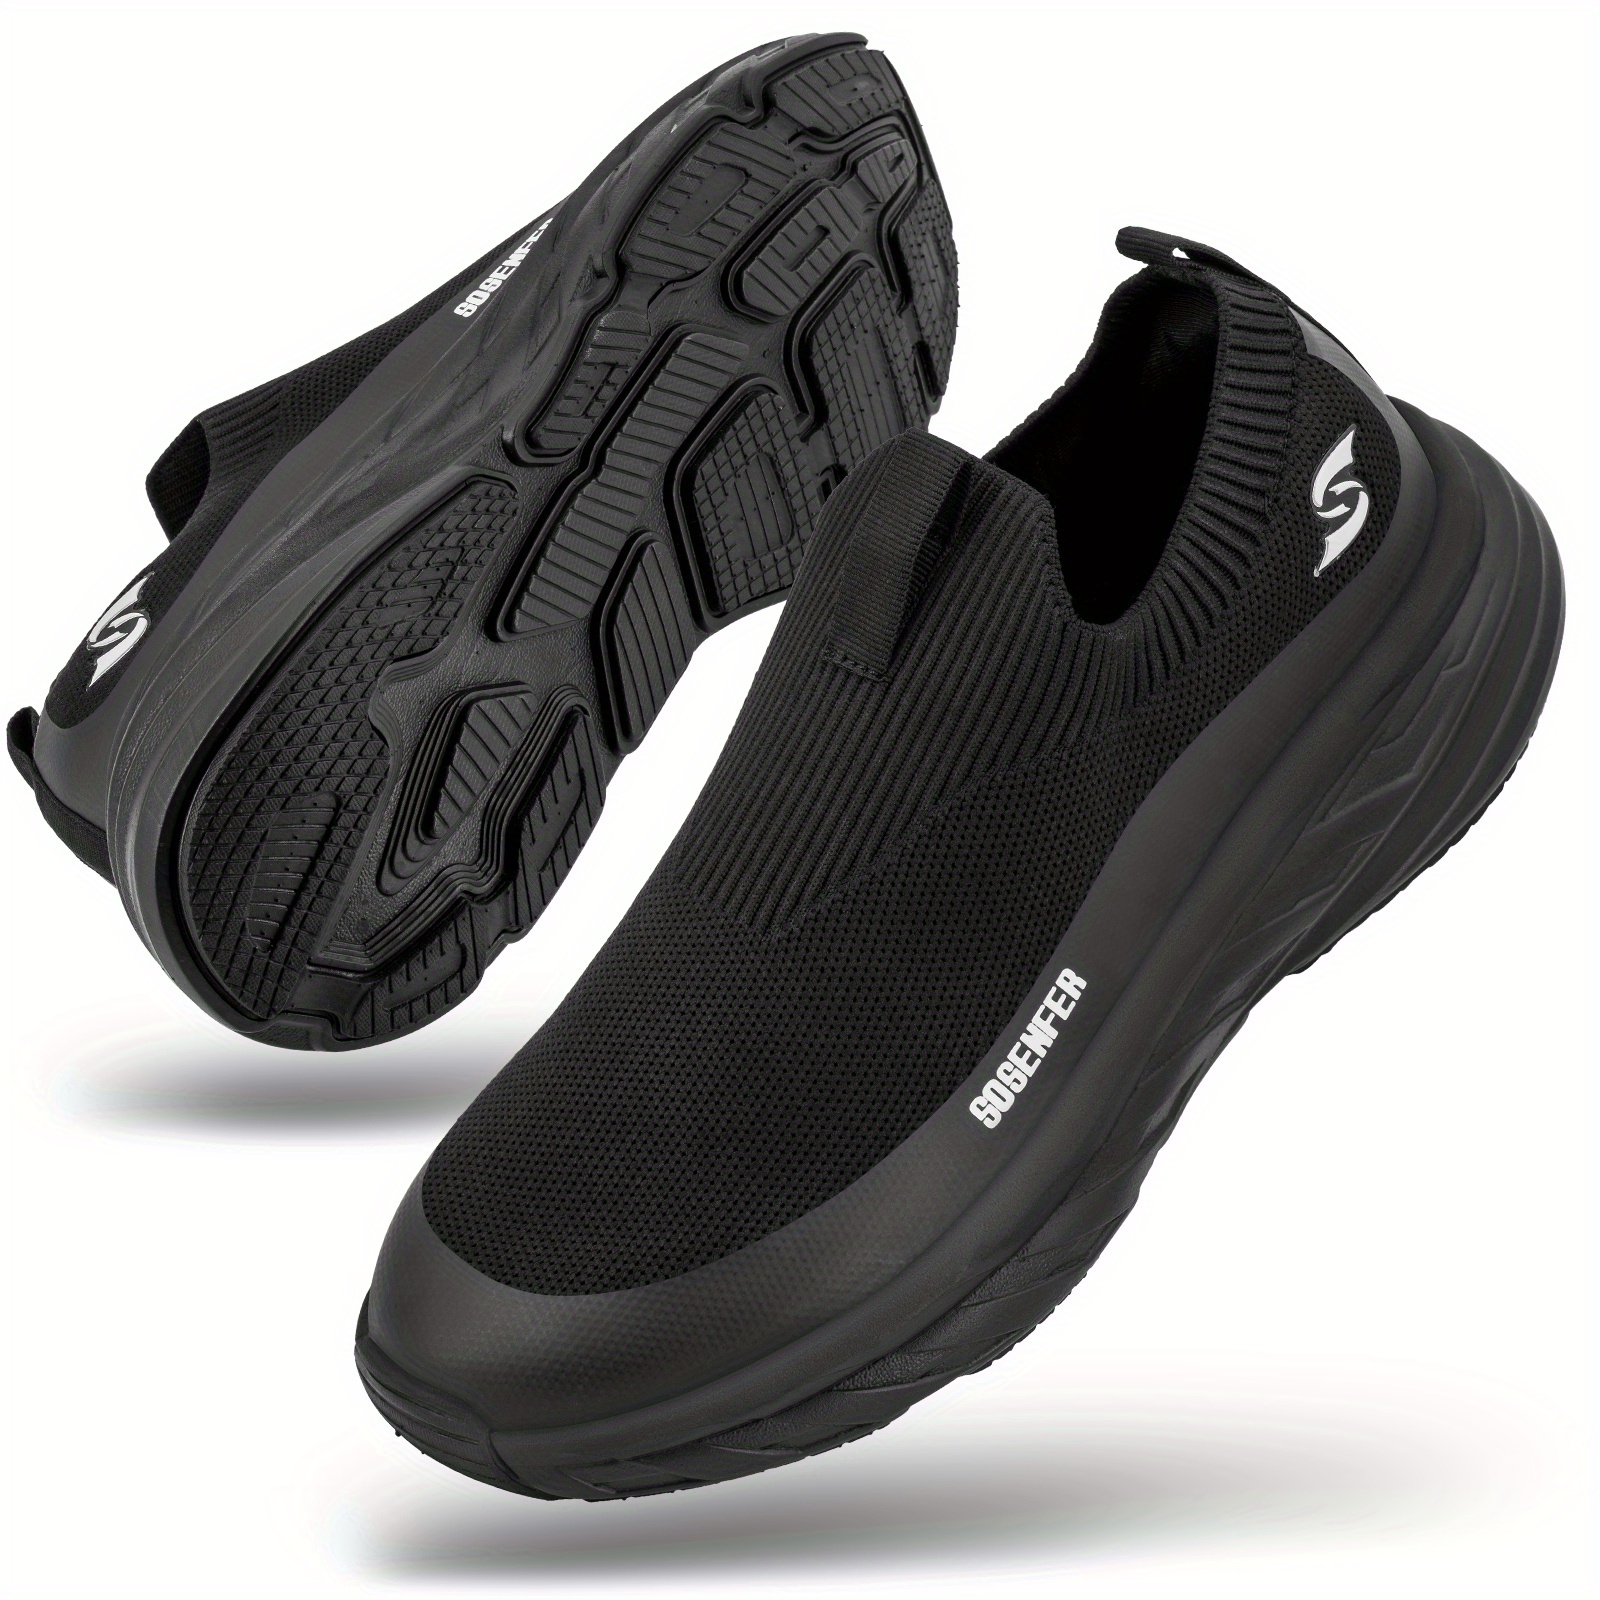 Zapatillas Running Hombre Slip-on Sneakers - Zapatillas Deportivas -  Zapatillas Caminar Ligeras Transpirables - Calzado Hombre - Temu Mexico